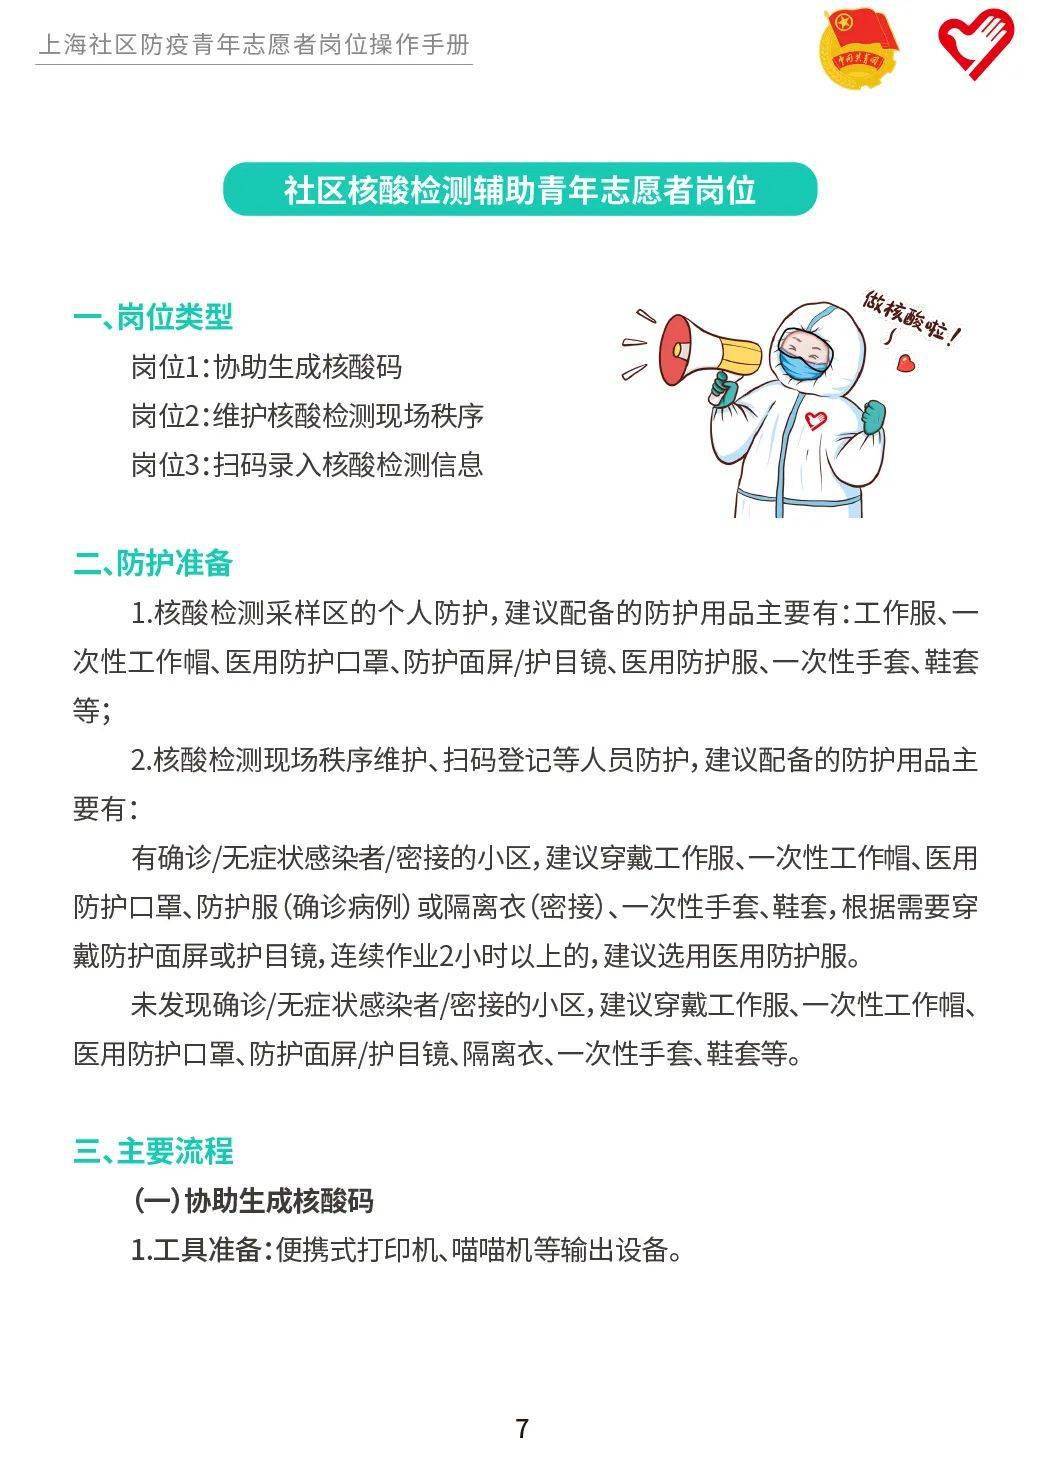 上海防疫青年志愿者岗位实务手册上线为不同岗位量身定制快收藏